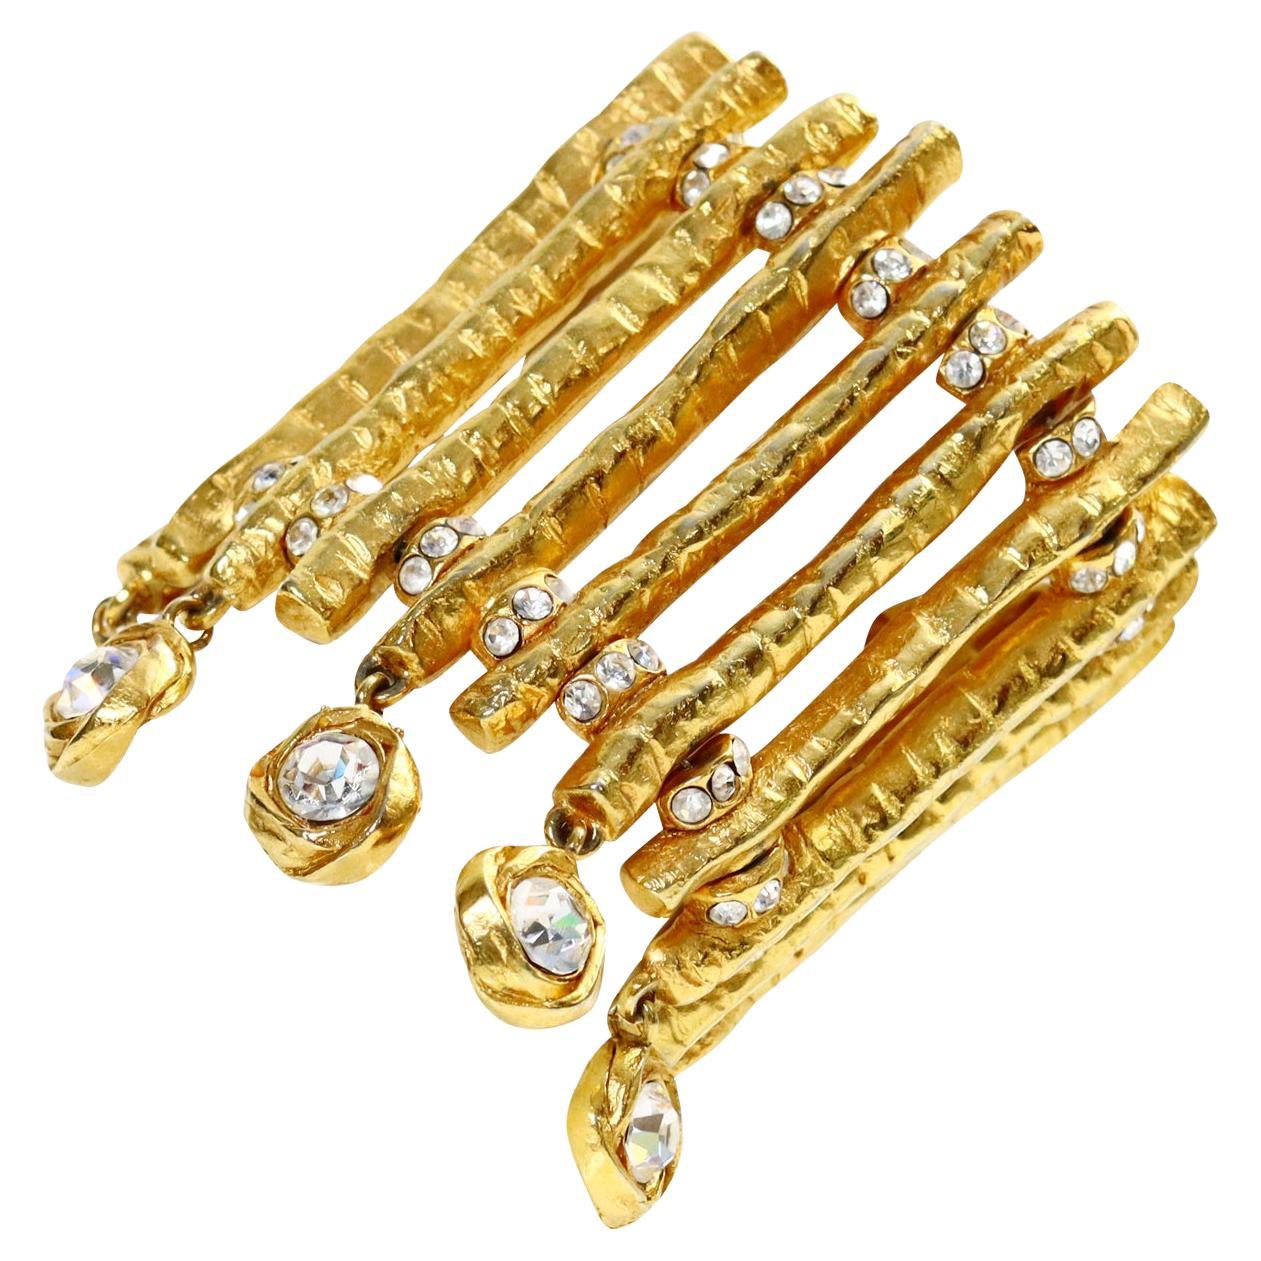 Vintage Christian Lacroix Paris Gold Bracelet with Dangling Crystals Circa 1980s